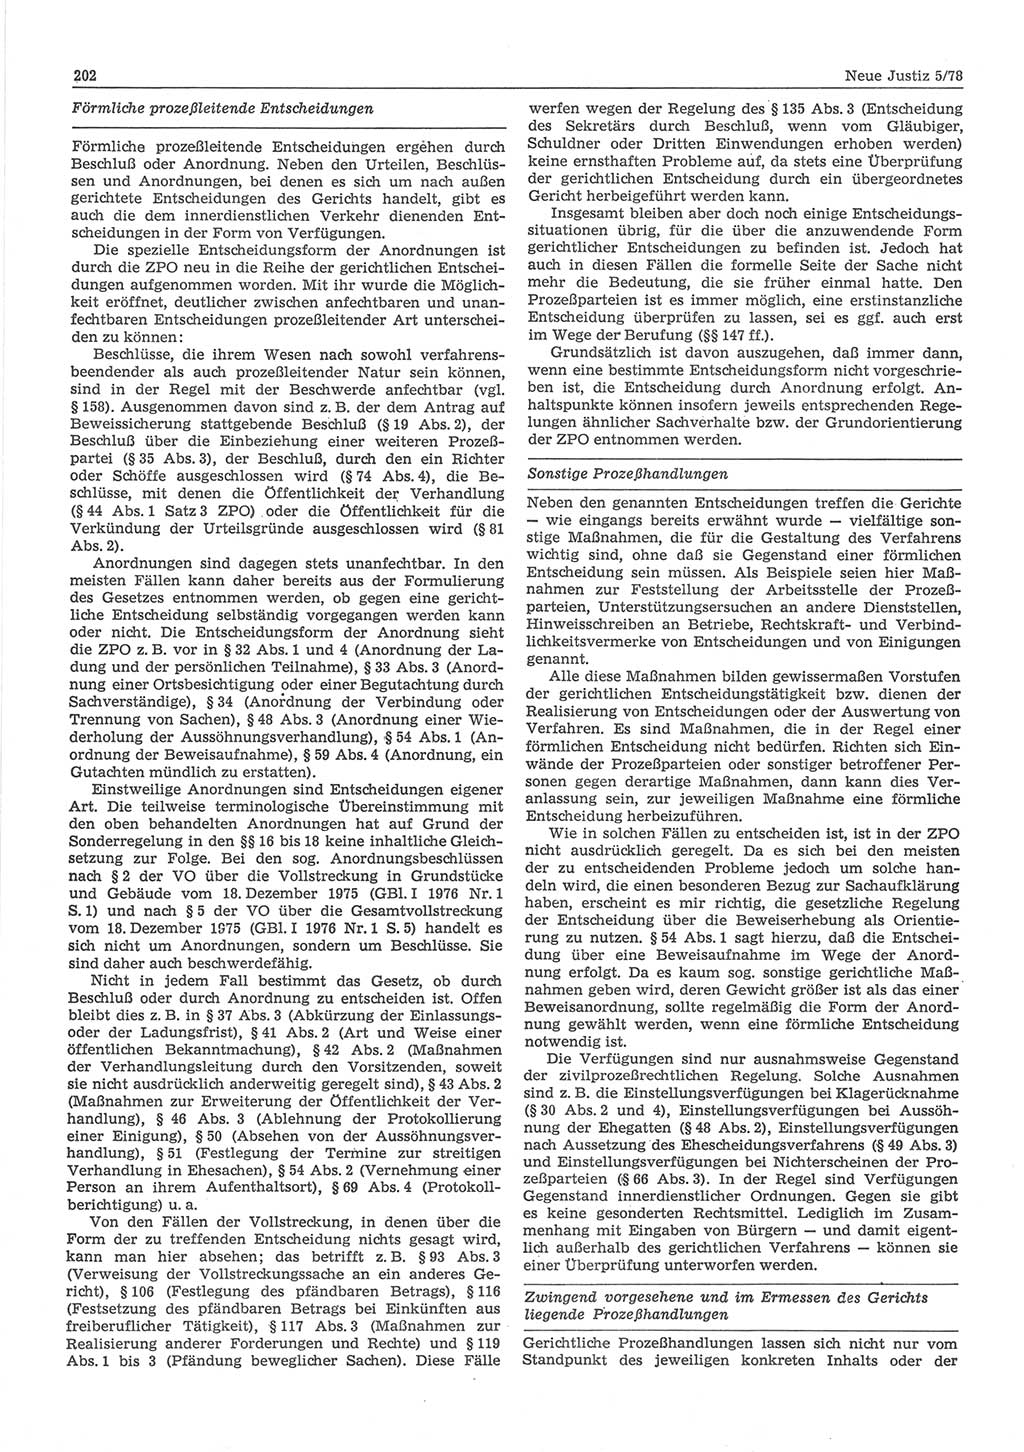 Neue Justiz (NJ), Zeitschrift für sozialistisches Recht und Gesetzlichkeit [Deutsche Demokratische Republik (DDR)], 32. Jahrgang 1978, Seite 202 (NJ DDR 1978, S. 202)